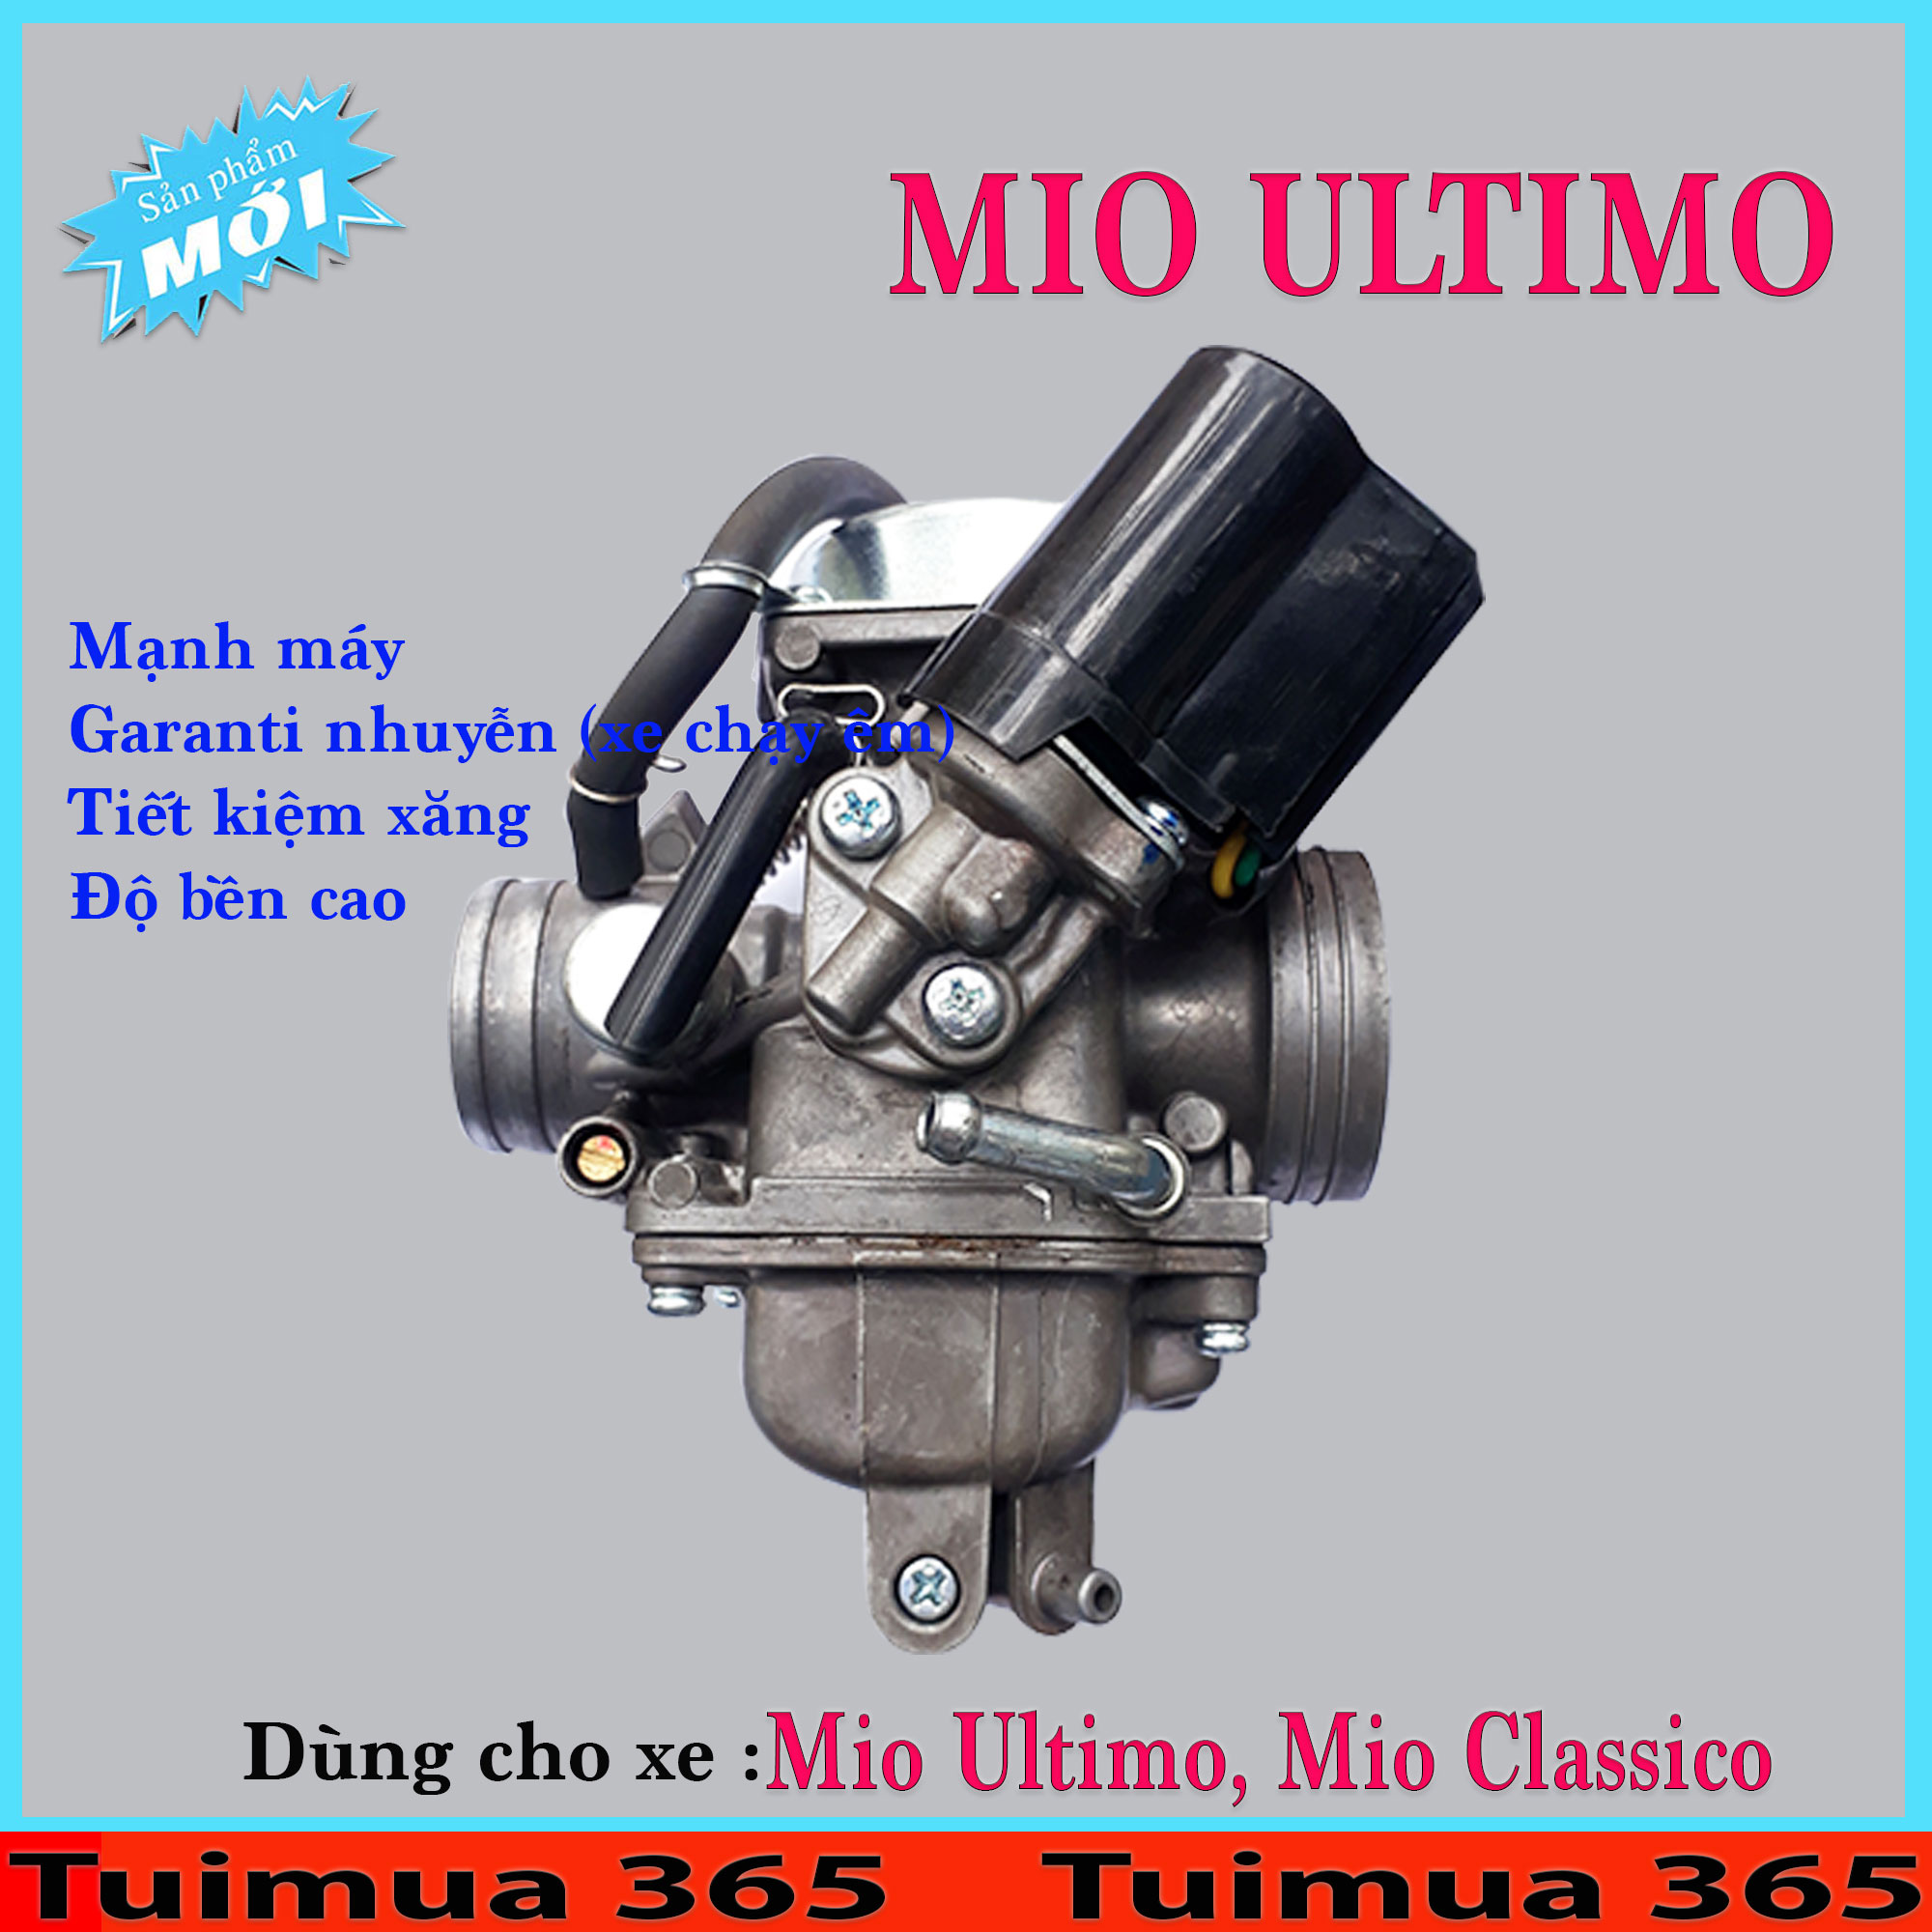 Bình Xăng Con (Bộ Chế Hòa Khí ) dành cho Mio Ultimo, Mio Classico